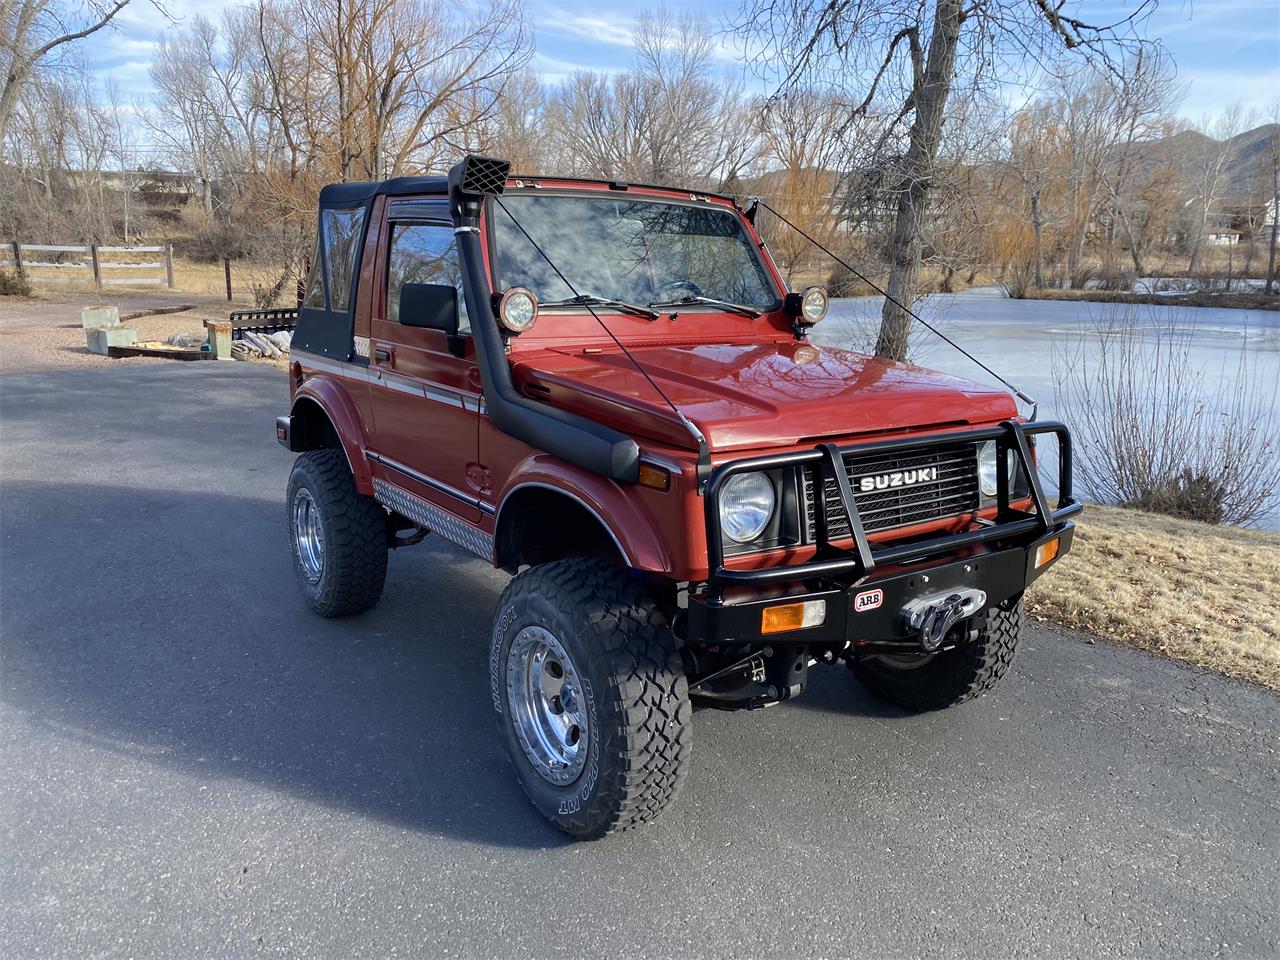 For Sale: 1987 Suzuki Samurai in Salida, Colorado for sale in Salida, CO